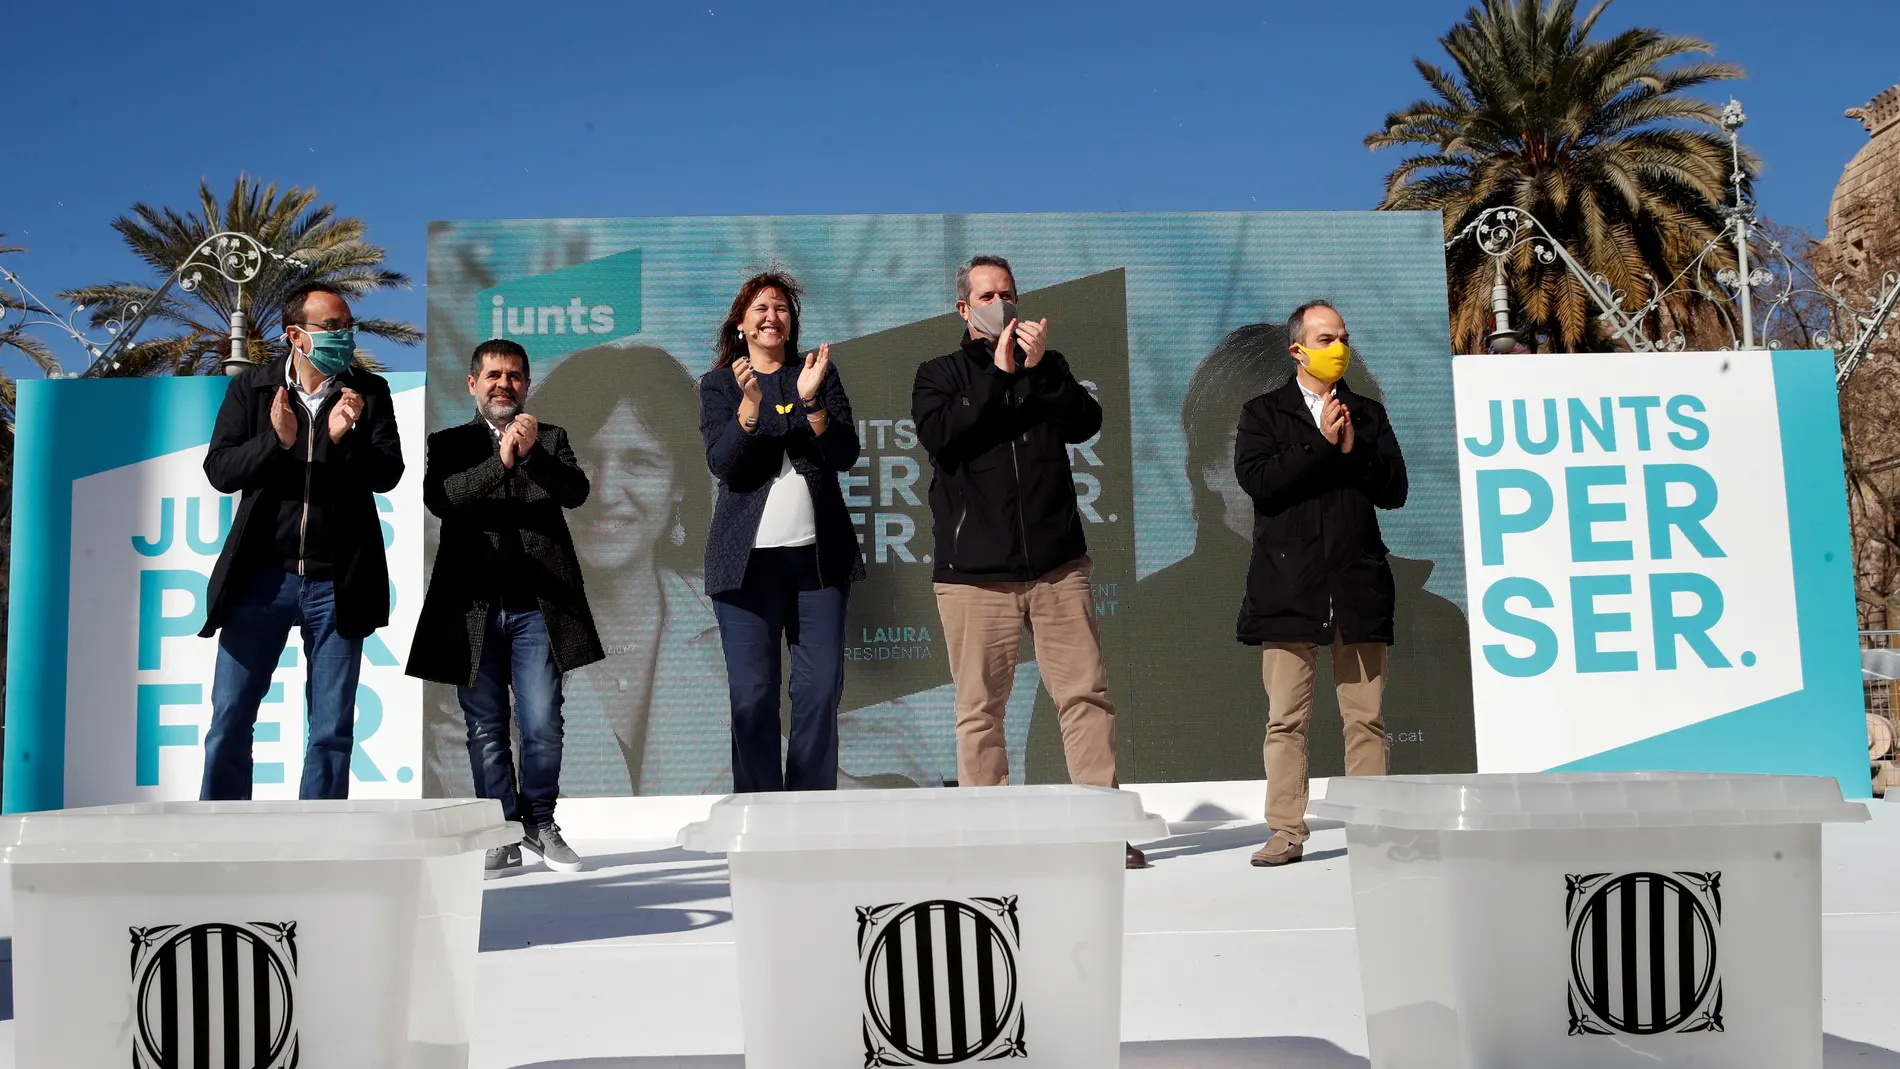 La candidata a la presidencia de la Generalitat de Cataluña, Laura Borràs junto a los presos con tercer grado Josep Rull, Jordi Sànchez, Quim Forn y Jordi Turull, al finalizar acto electoral celebrado este sábado en Barcelona